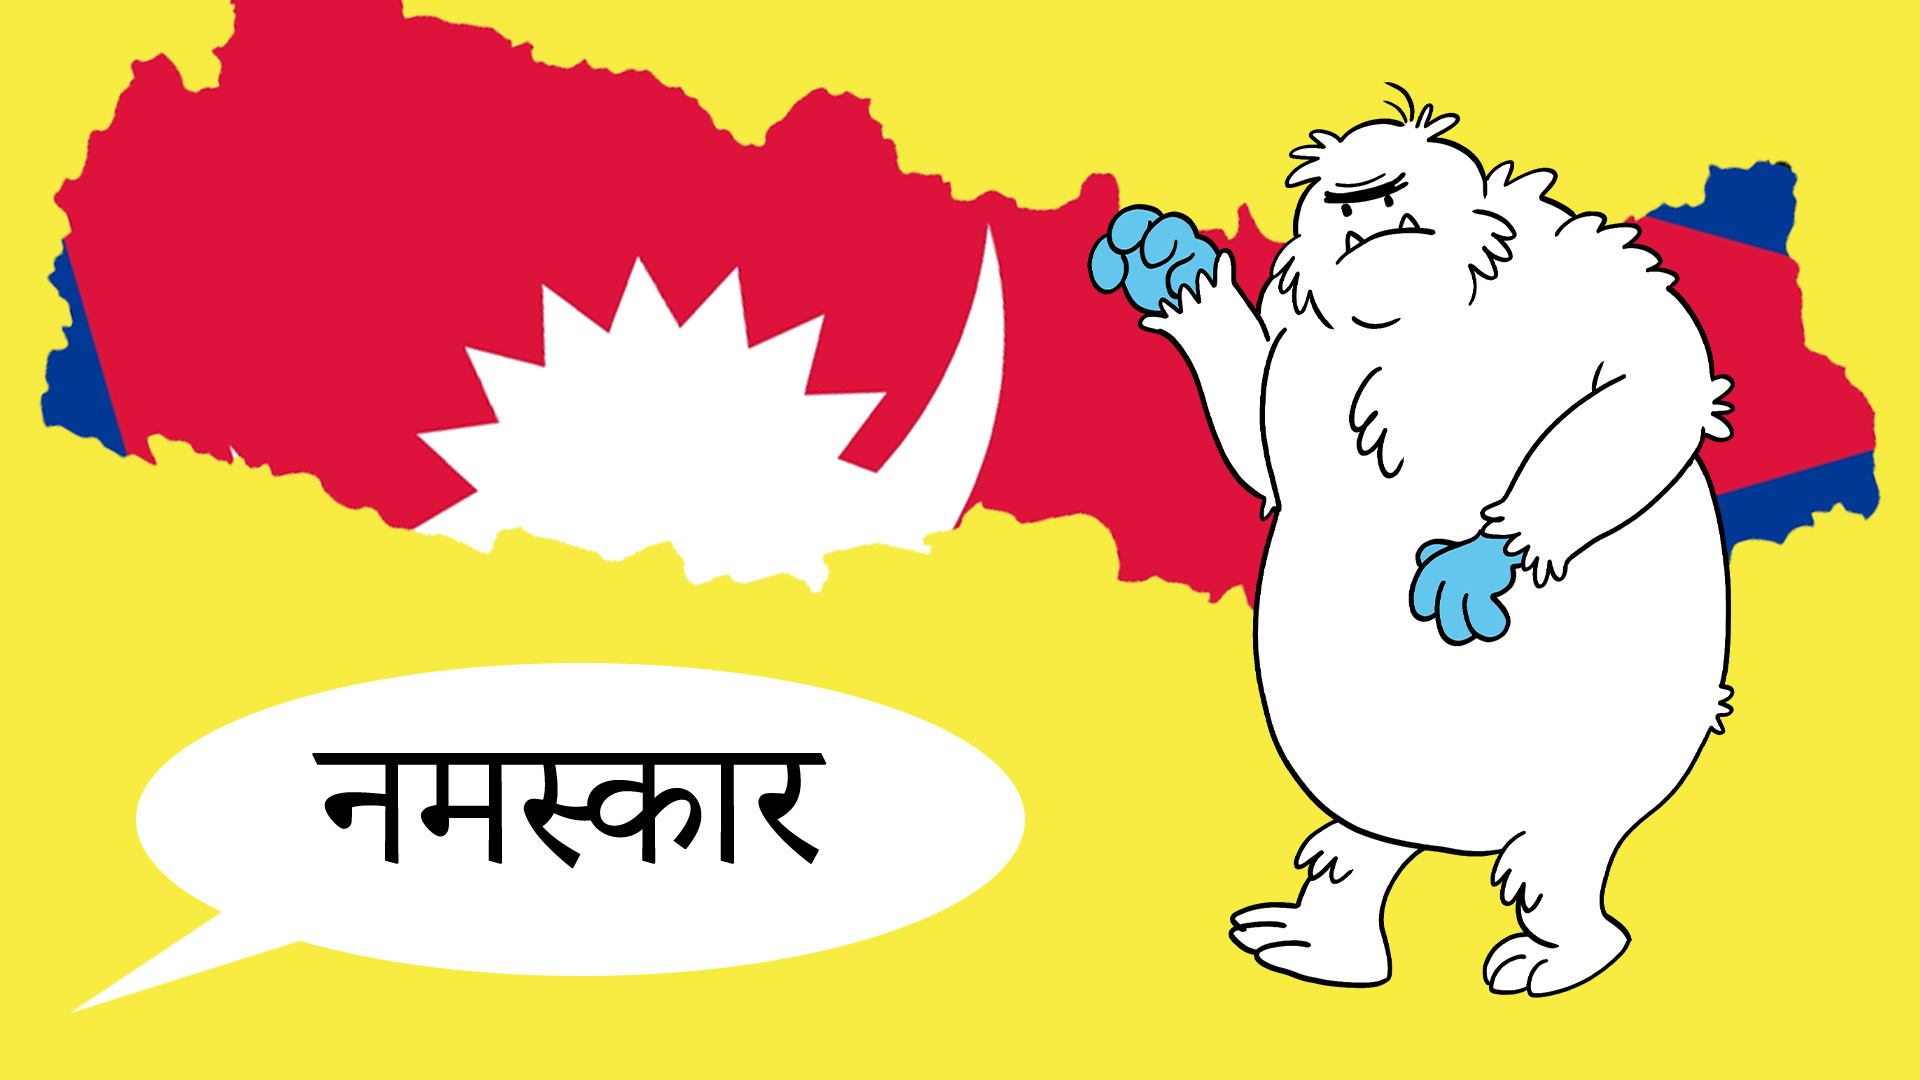 Nepali speech bubble saying 'hello' to the Yeti